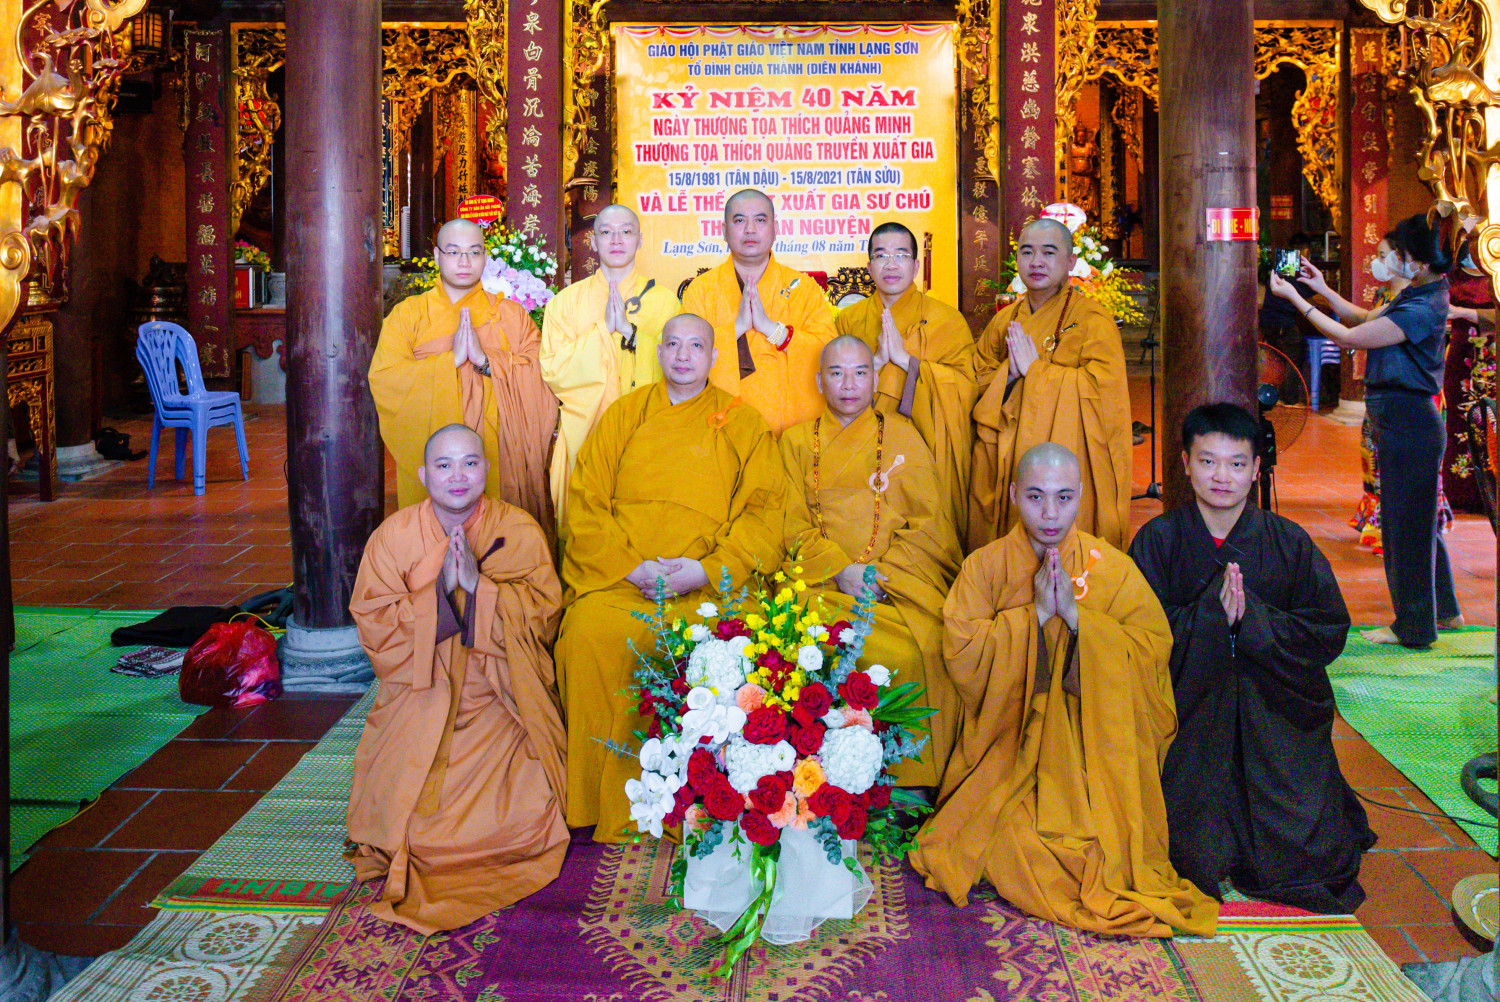 Lạng Sơn: Lễ Thế phát xuất gia tại chùa Thành